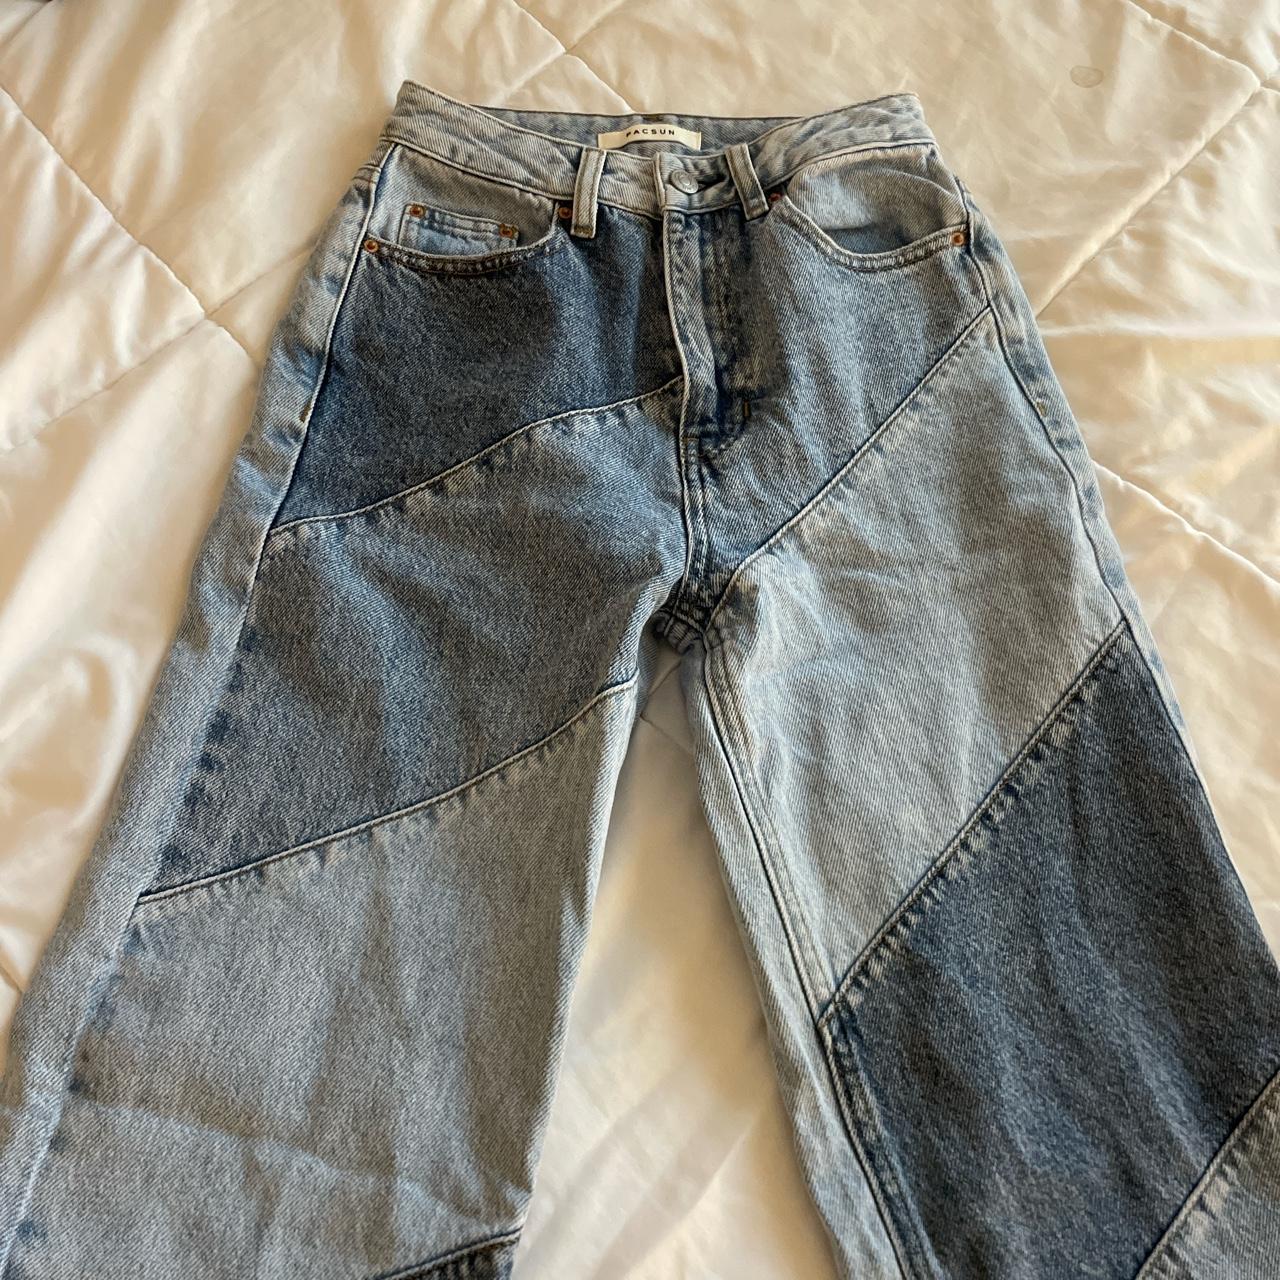 pacsun jeans size 24 - Depop